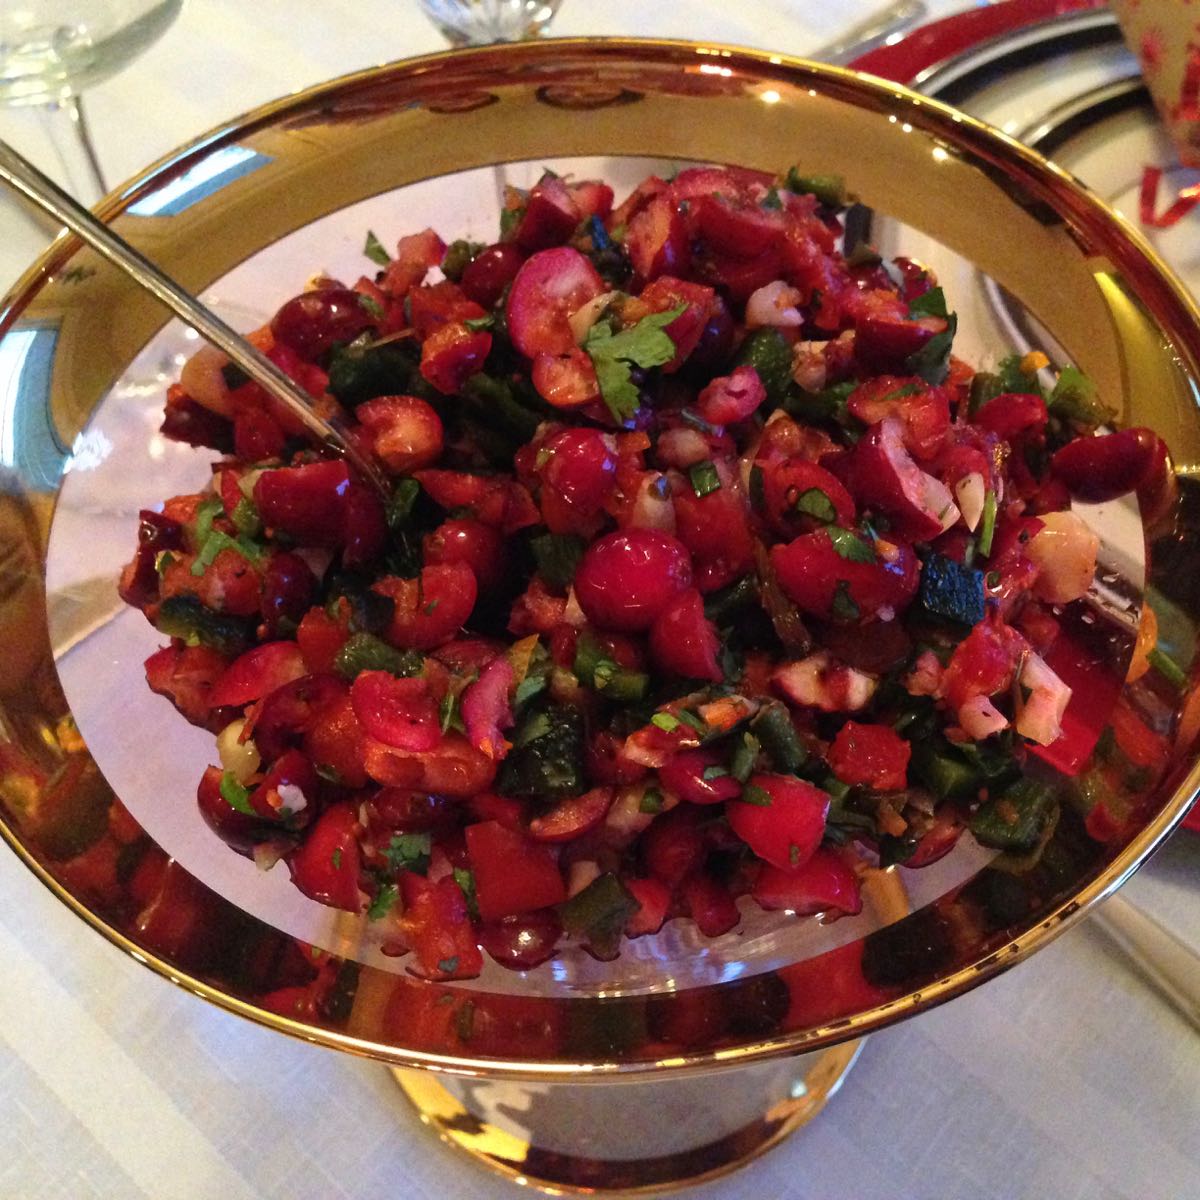 A dish of gluten free cranberry orange and cilantro salsa.